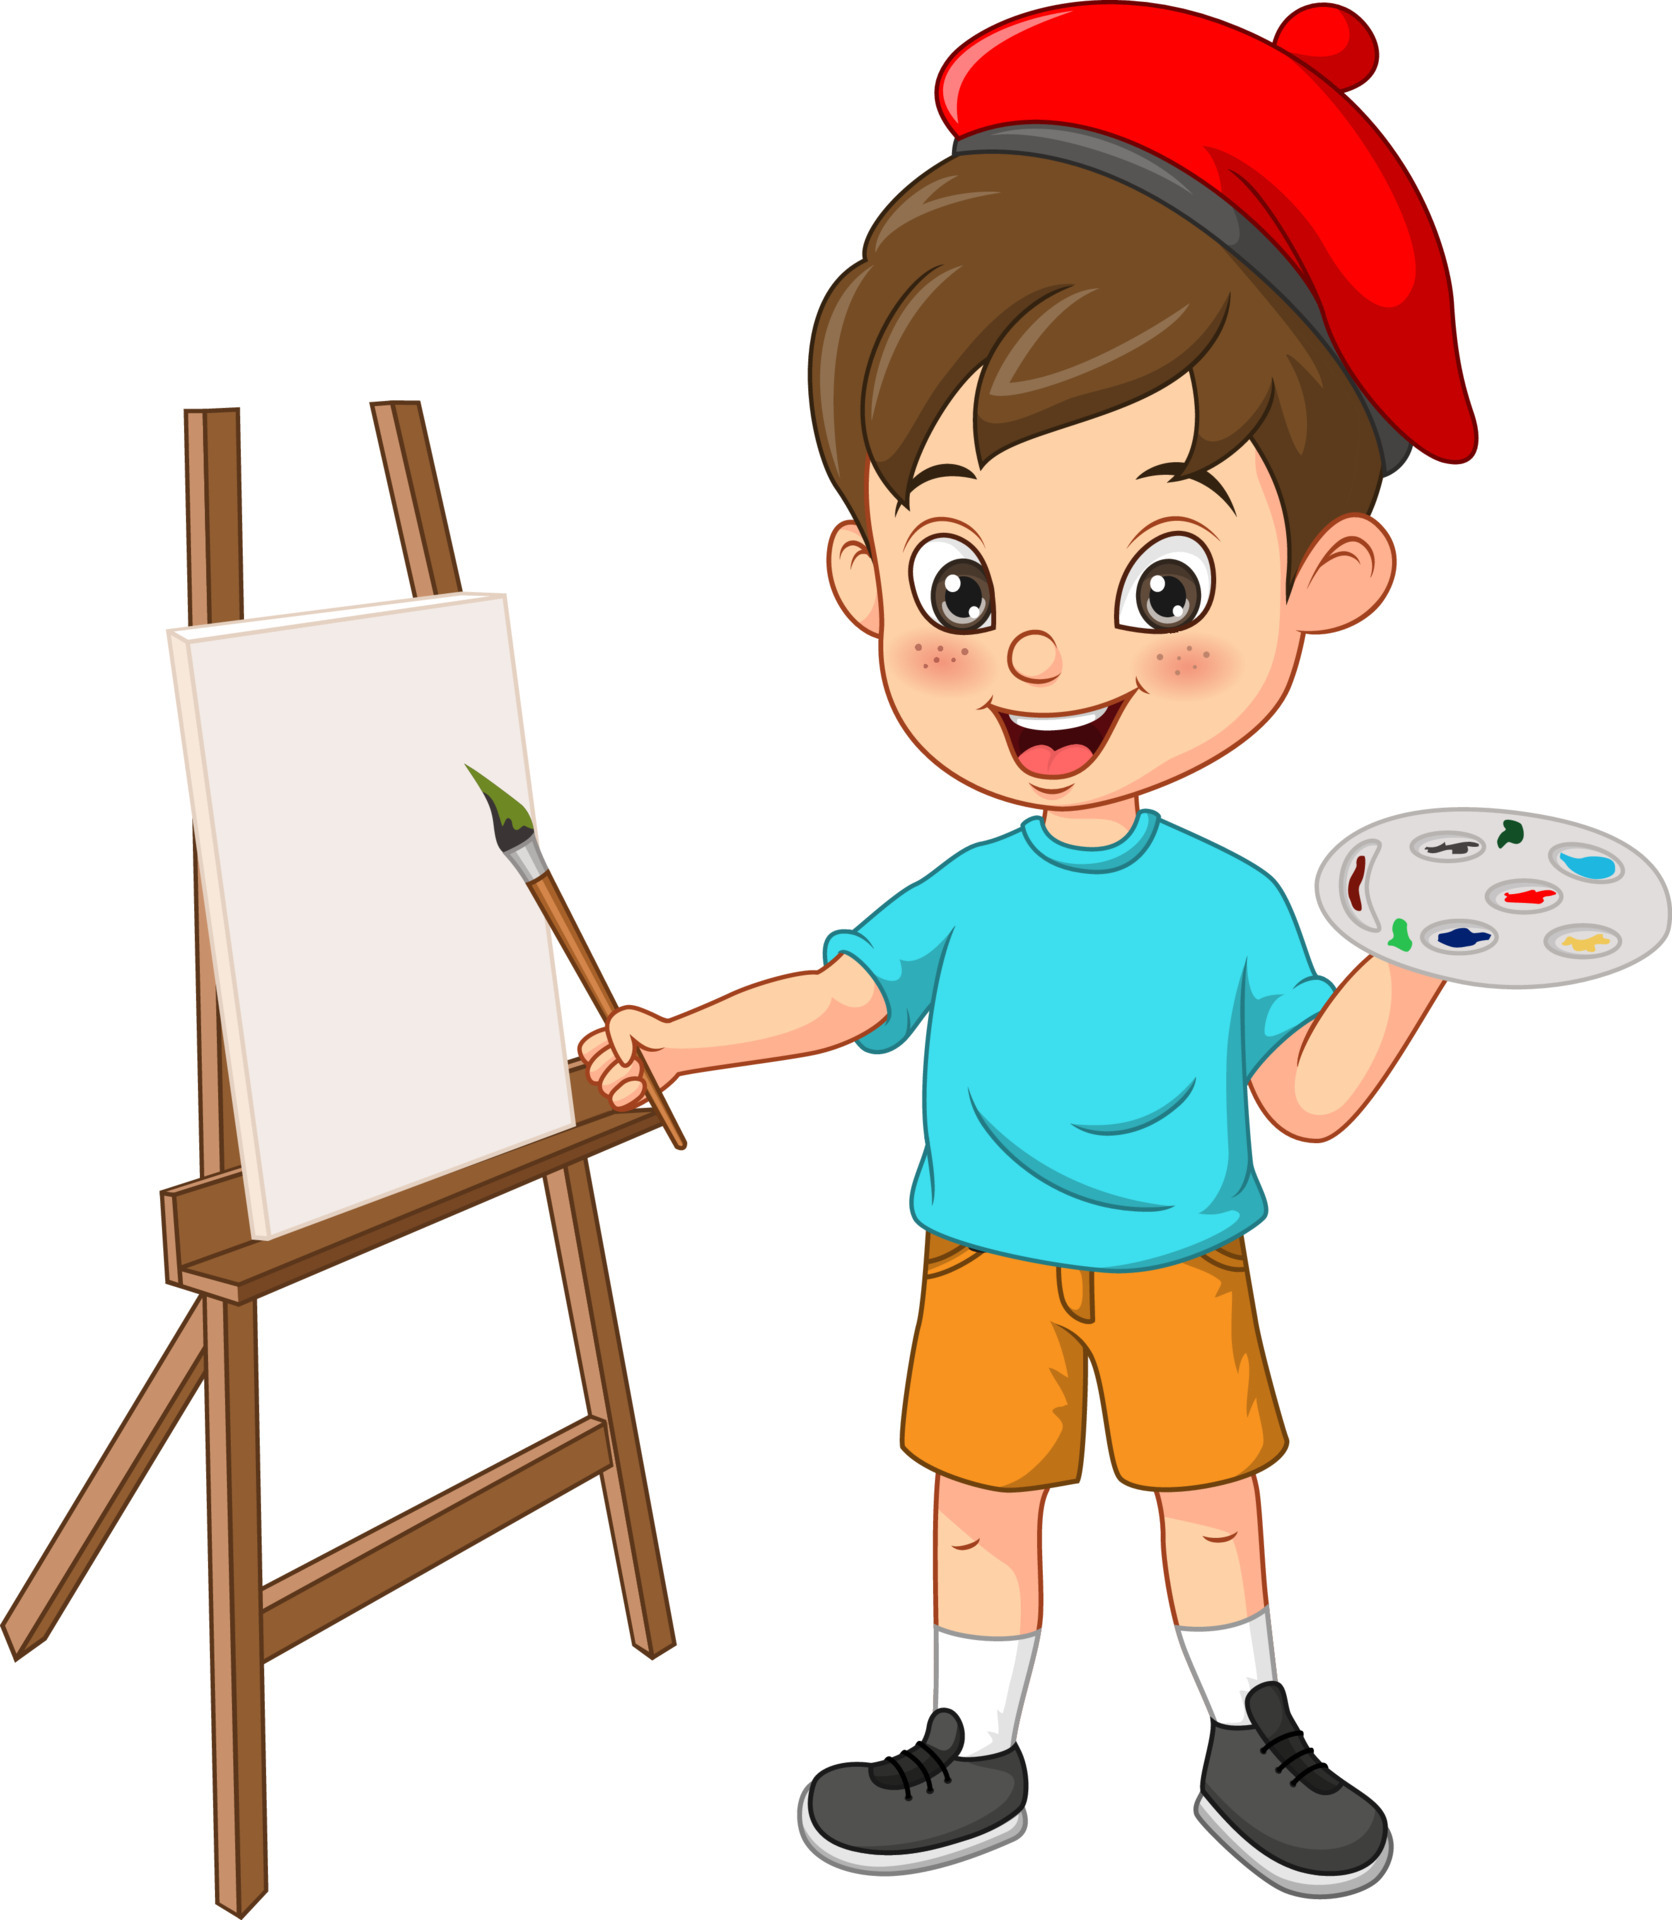 Menino com pincel artista de criança pintando personagem de